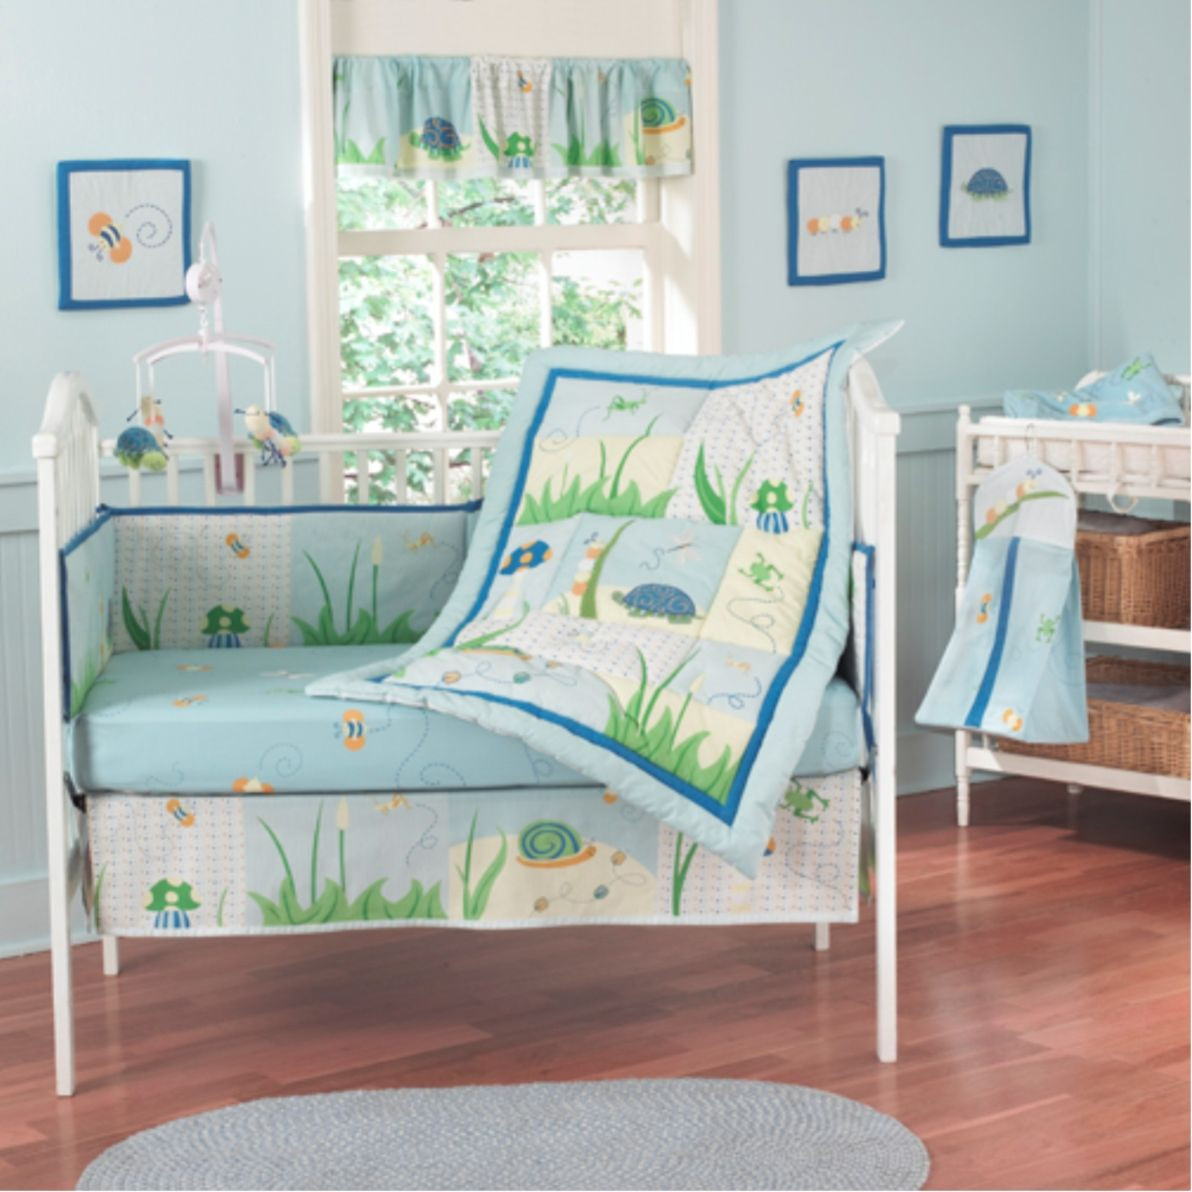 Toddler Boy Bedroom Furniture
 Baby Boy Bedroom Sets Home Furniture Design